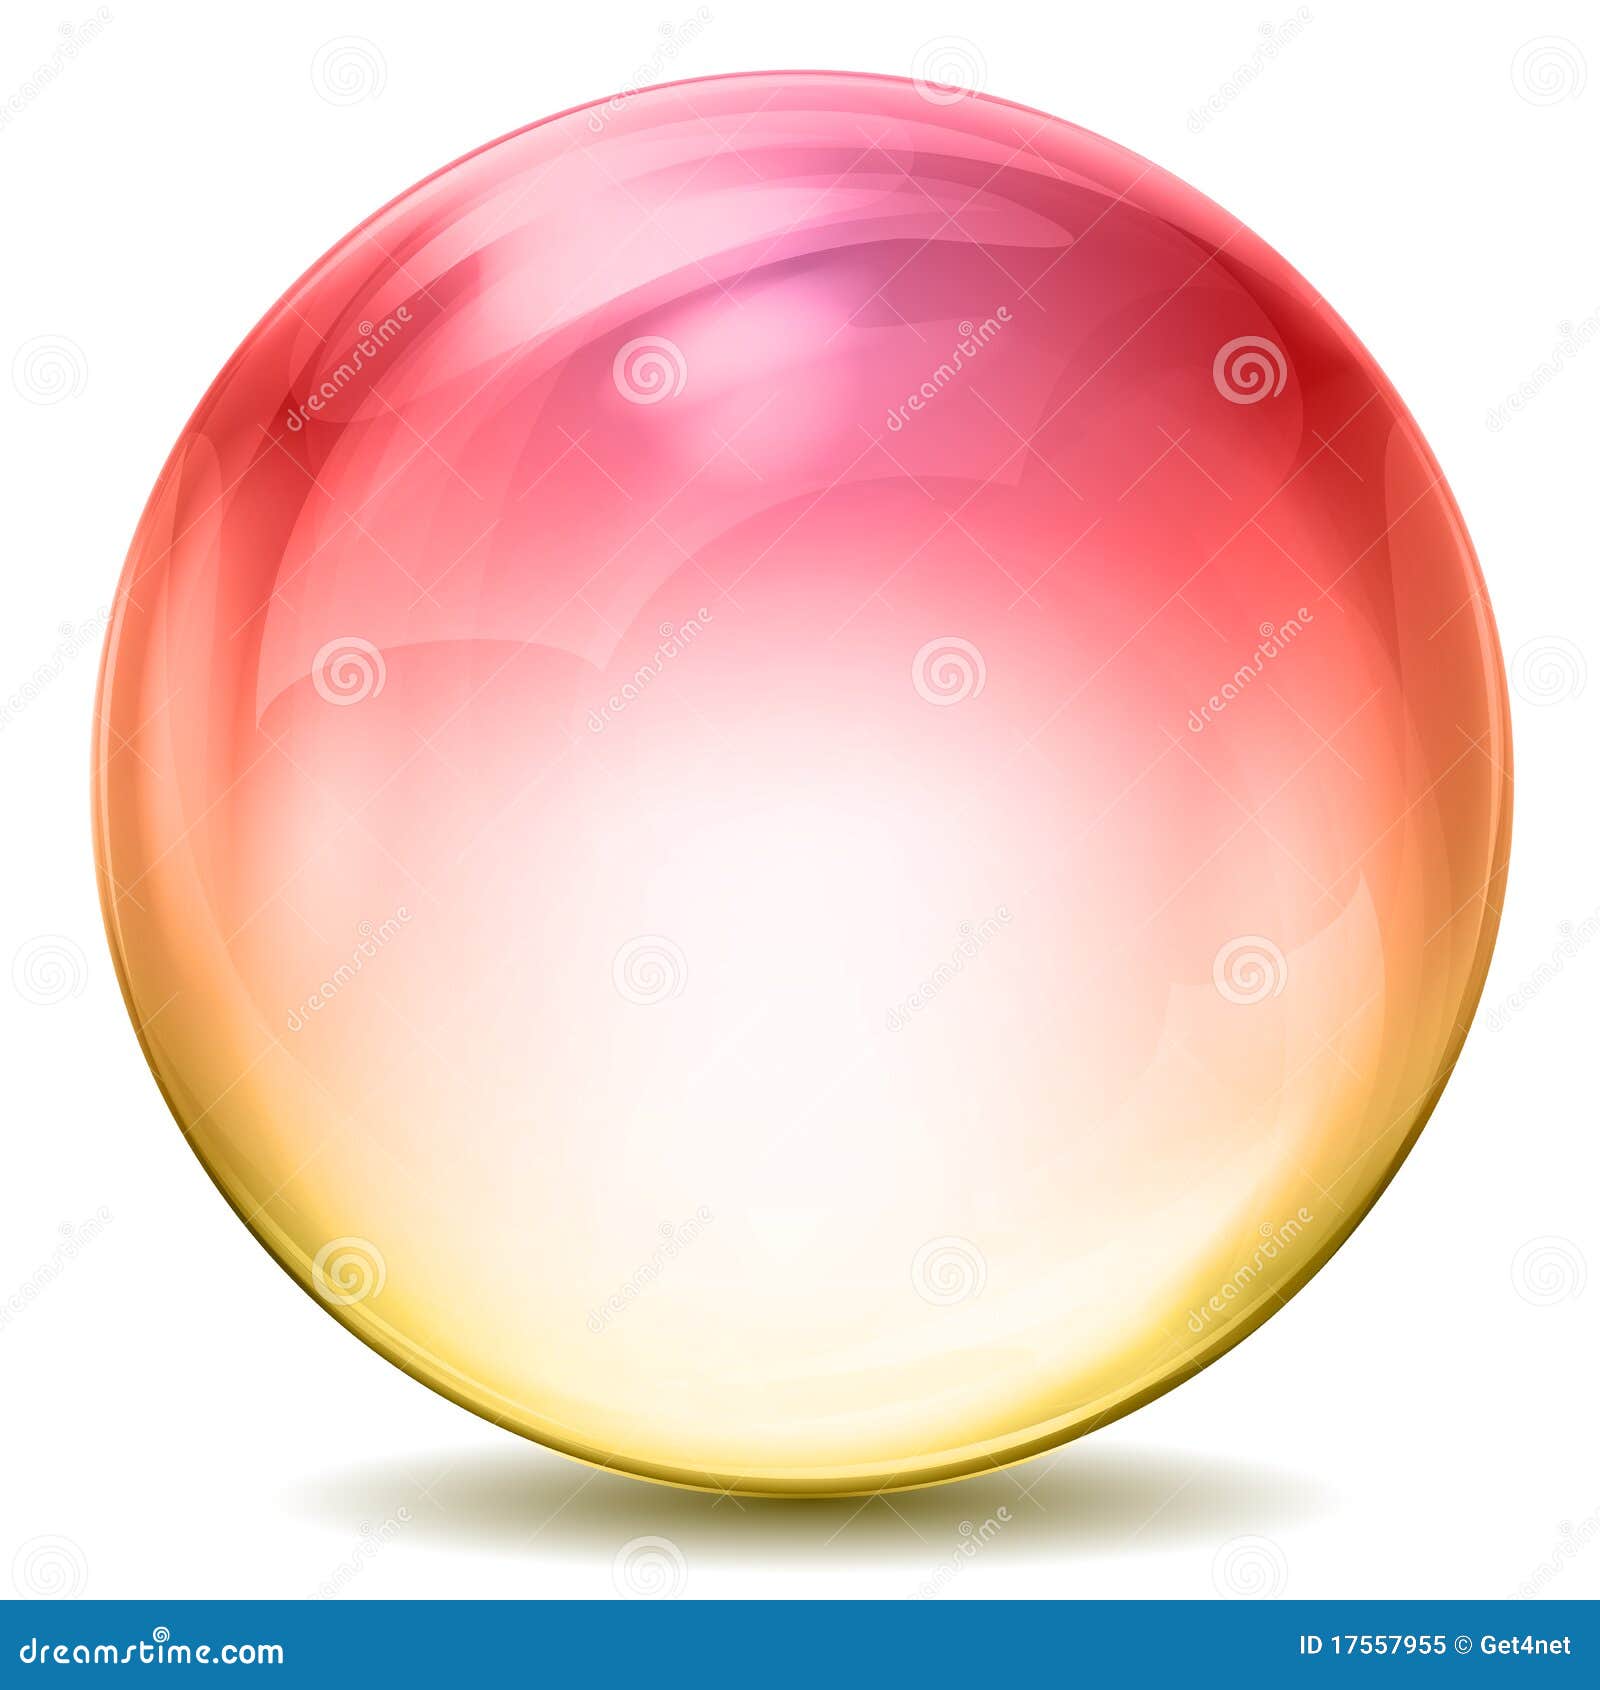 colorful crystal ball